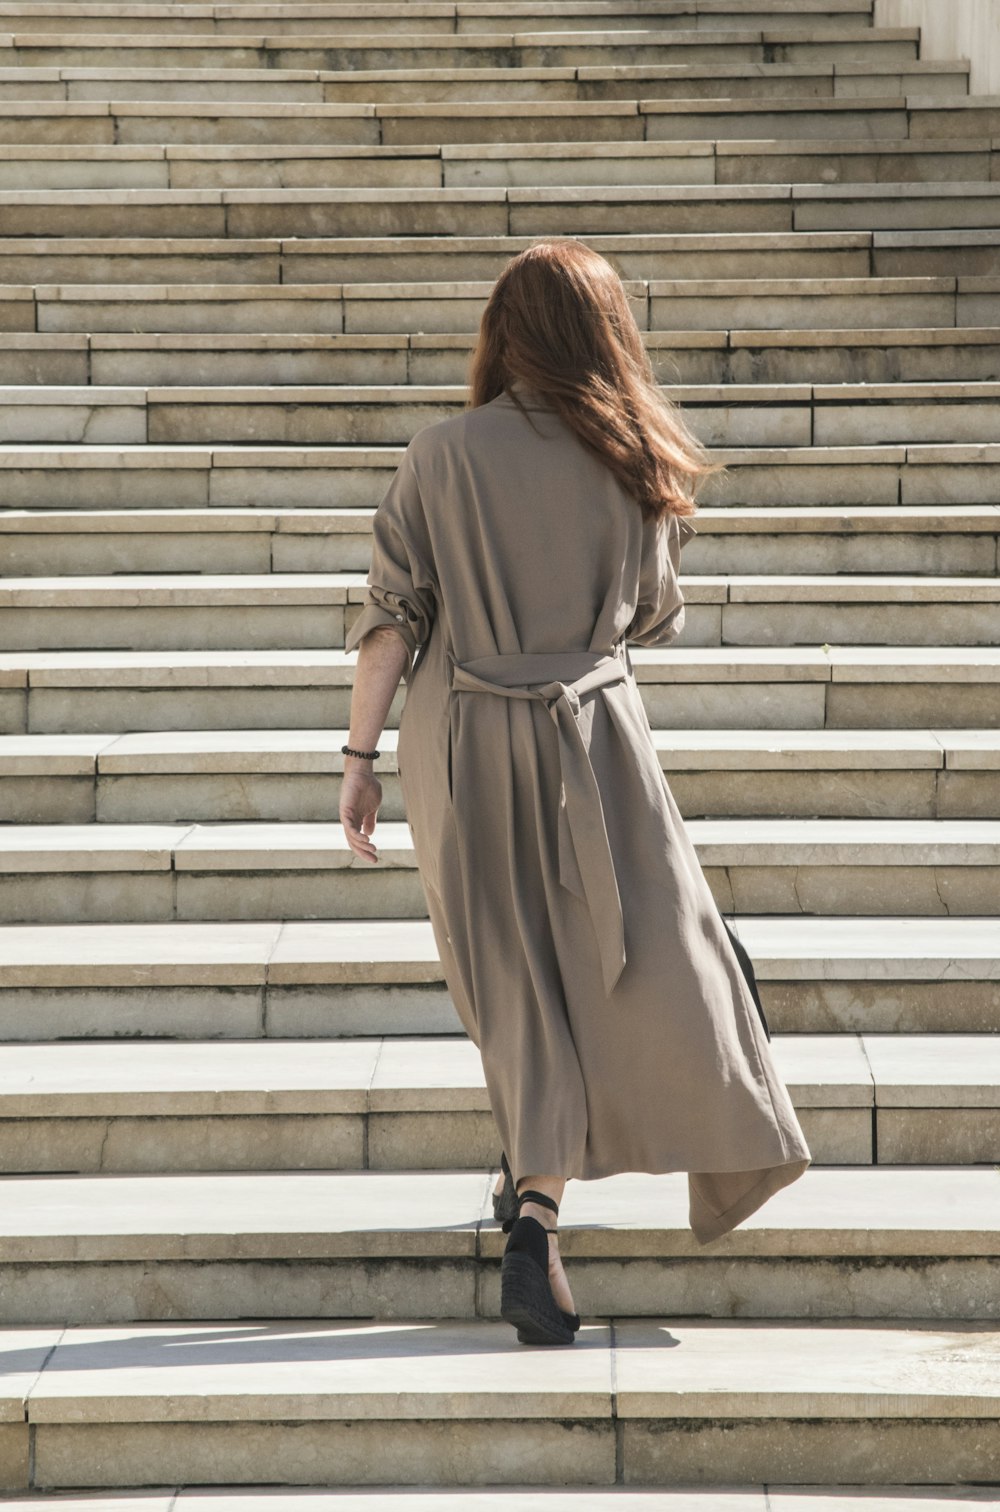 갈색 긴 소매 드레스를 입은 여자가 흰색 콘크리트 계단을 걷고 있다